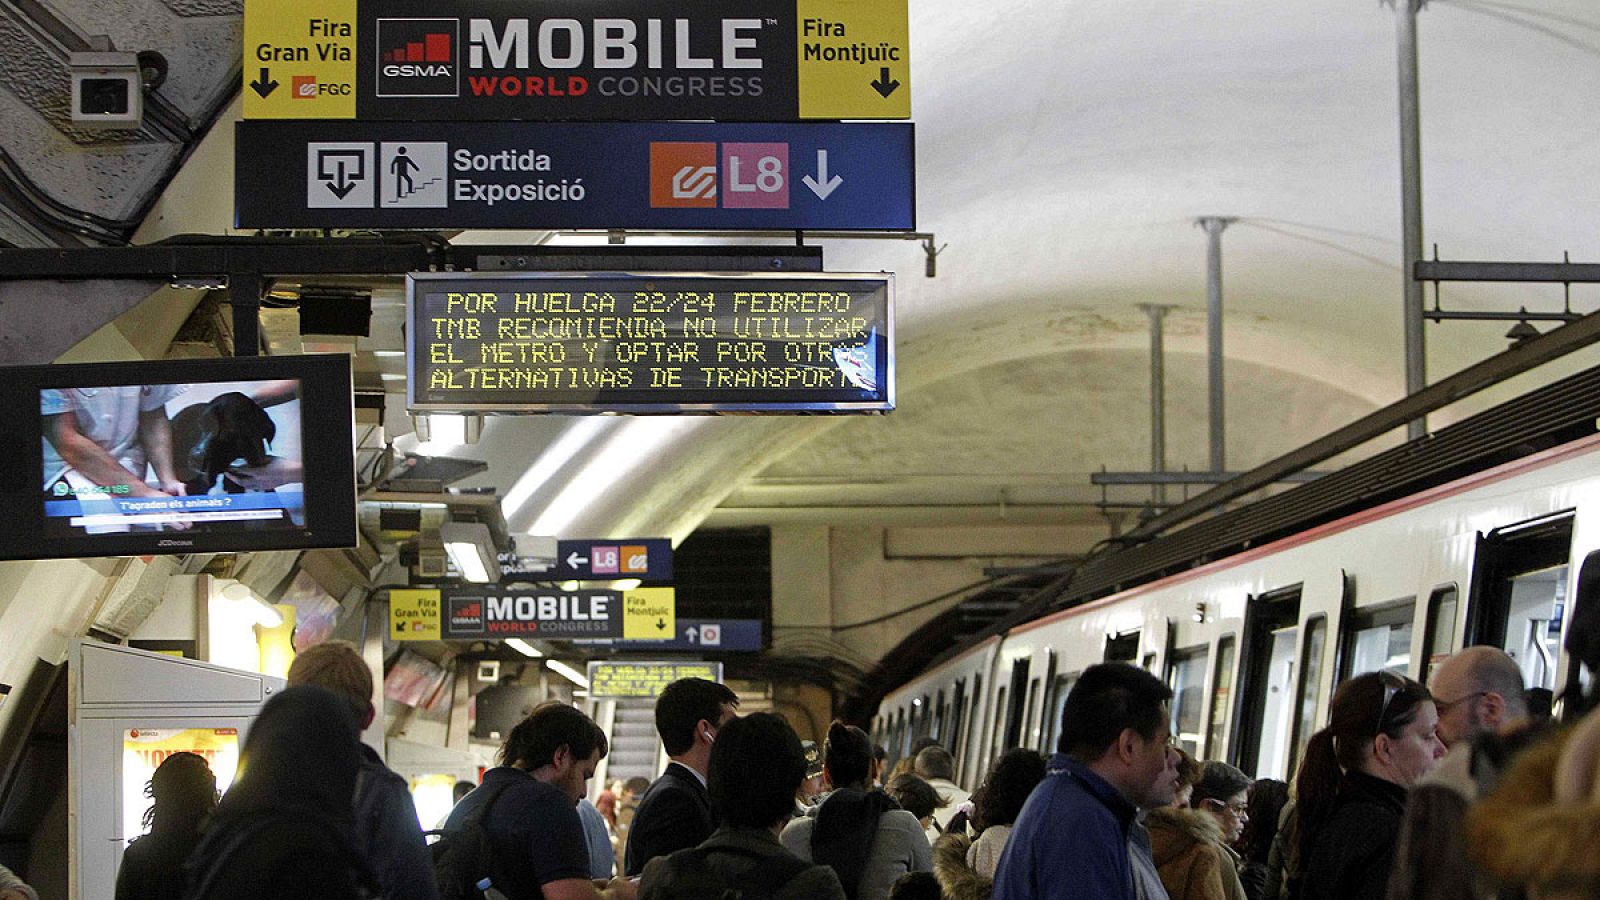 Vista de un panel informativo de la huelga que llevará a cabo el Metro de Barcelona los próximos días 22 y 24, coincidiendo con el Mobile World Congress.